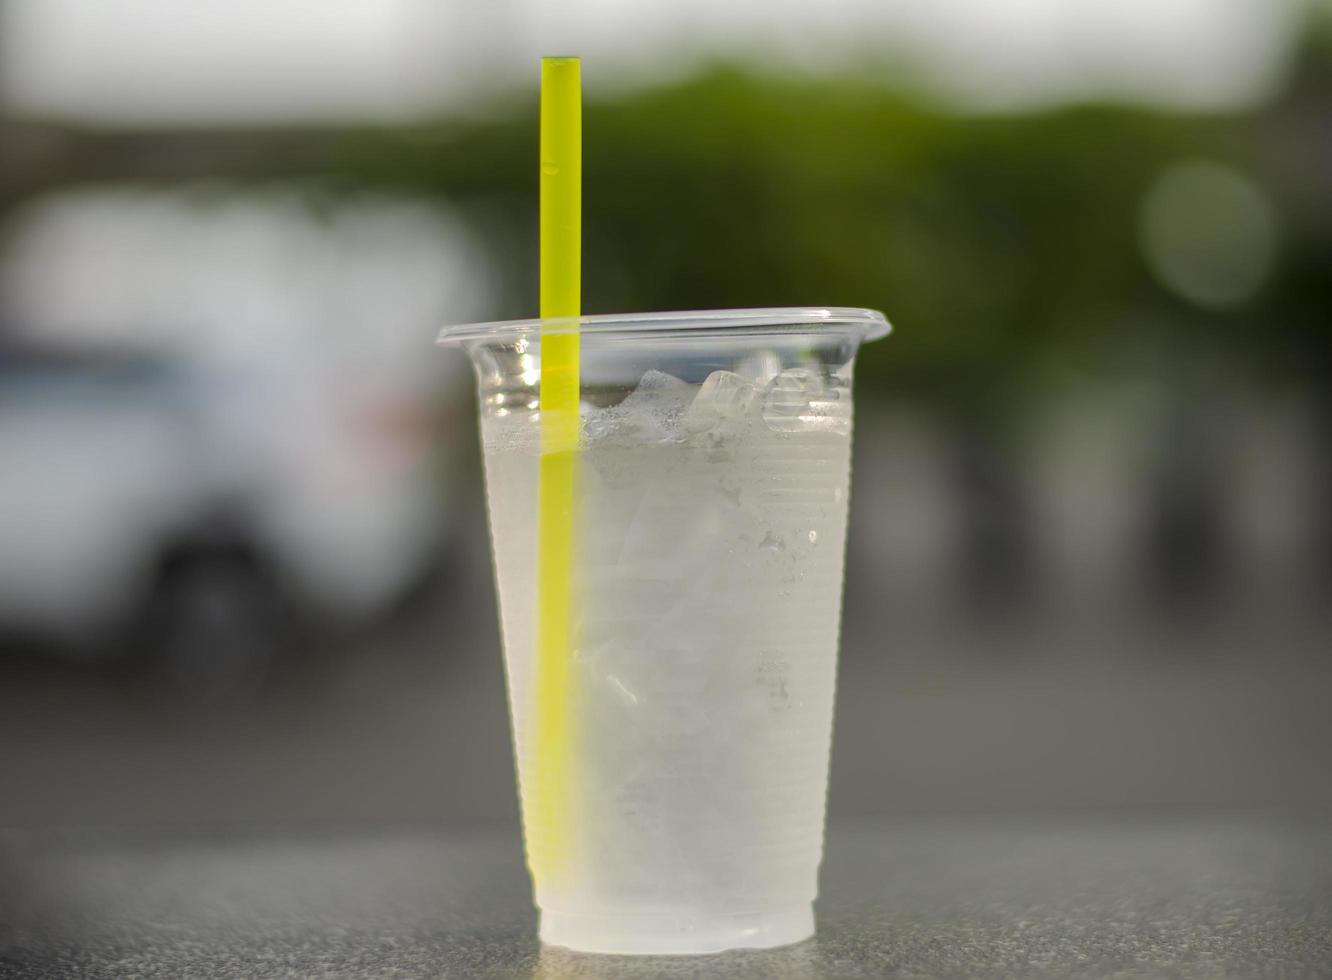 ijs verkoudheid drinken water in een glas kan helpen vernieuwen en koel uw lichaam. foto